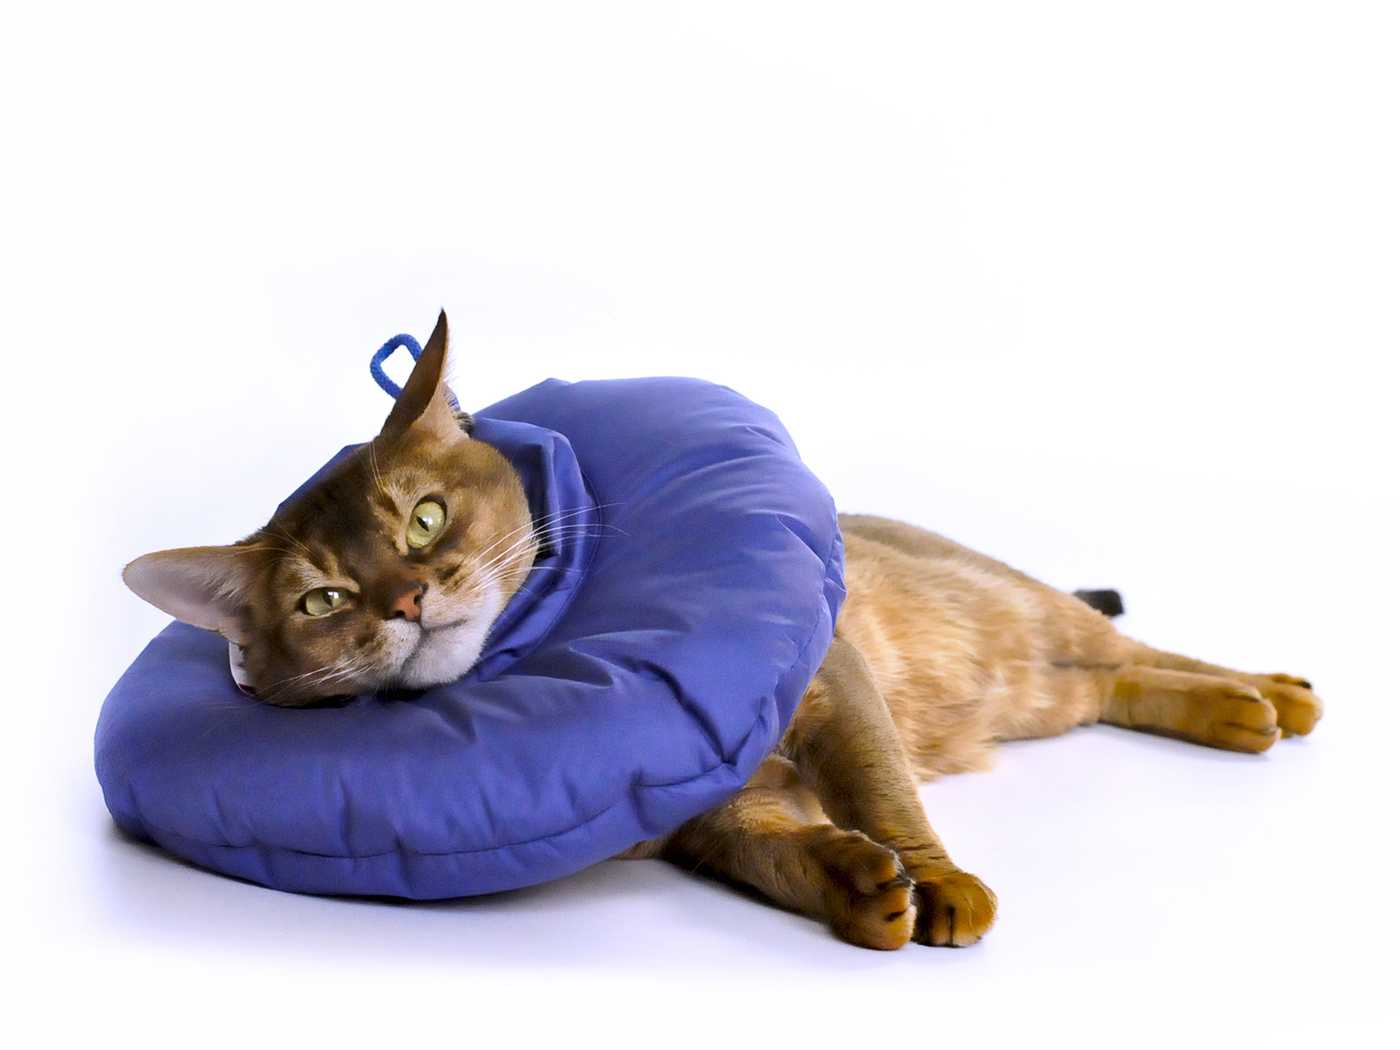 Защитный воротник для кошки: виды, инструкция применения